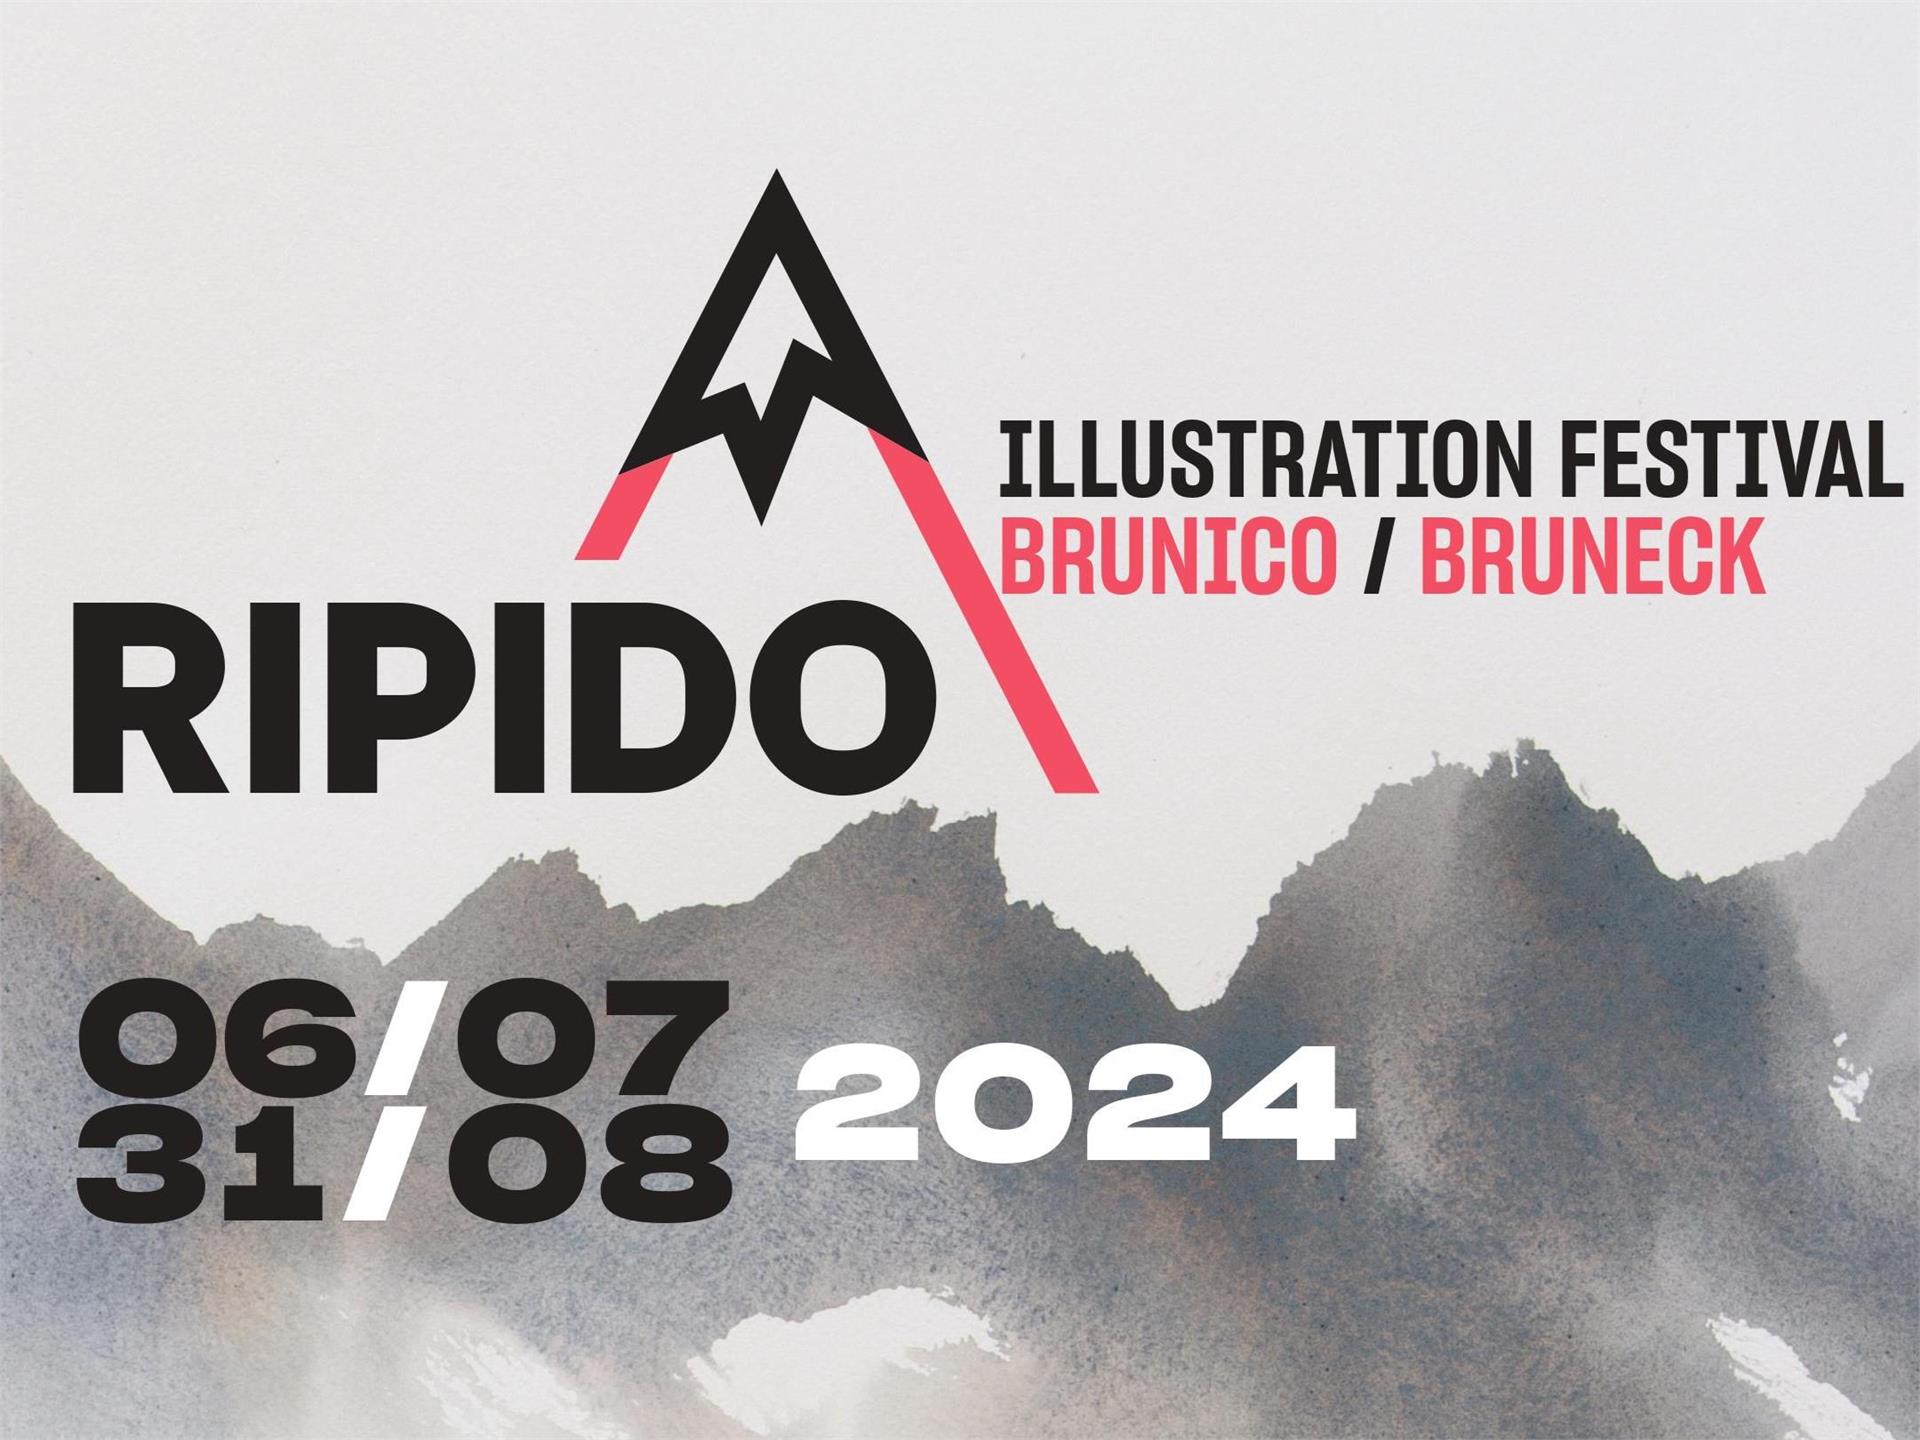 RIPIDO Illustration Festival